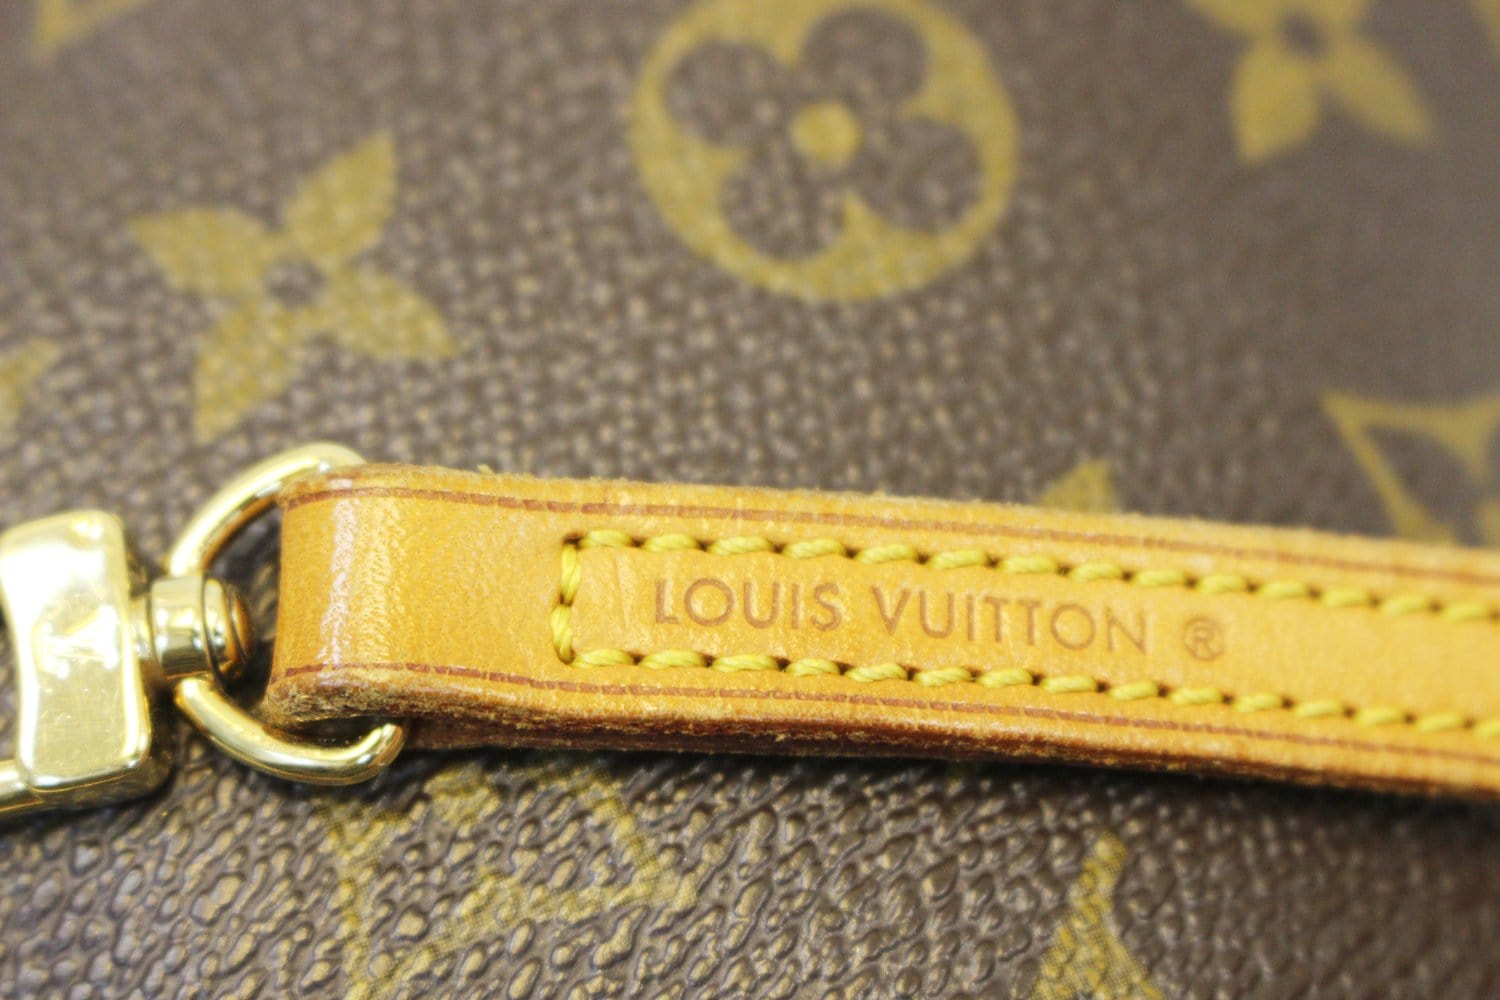 Louis Vuitton Monogram Canvas 16mm Bag Strap – I MISS YOU VINTAGE